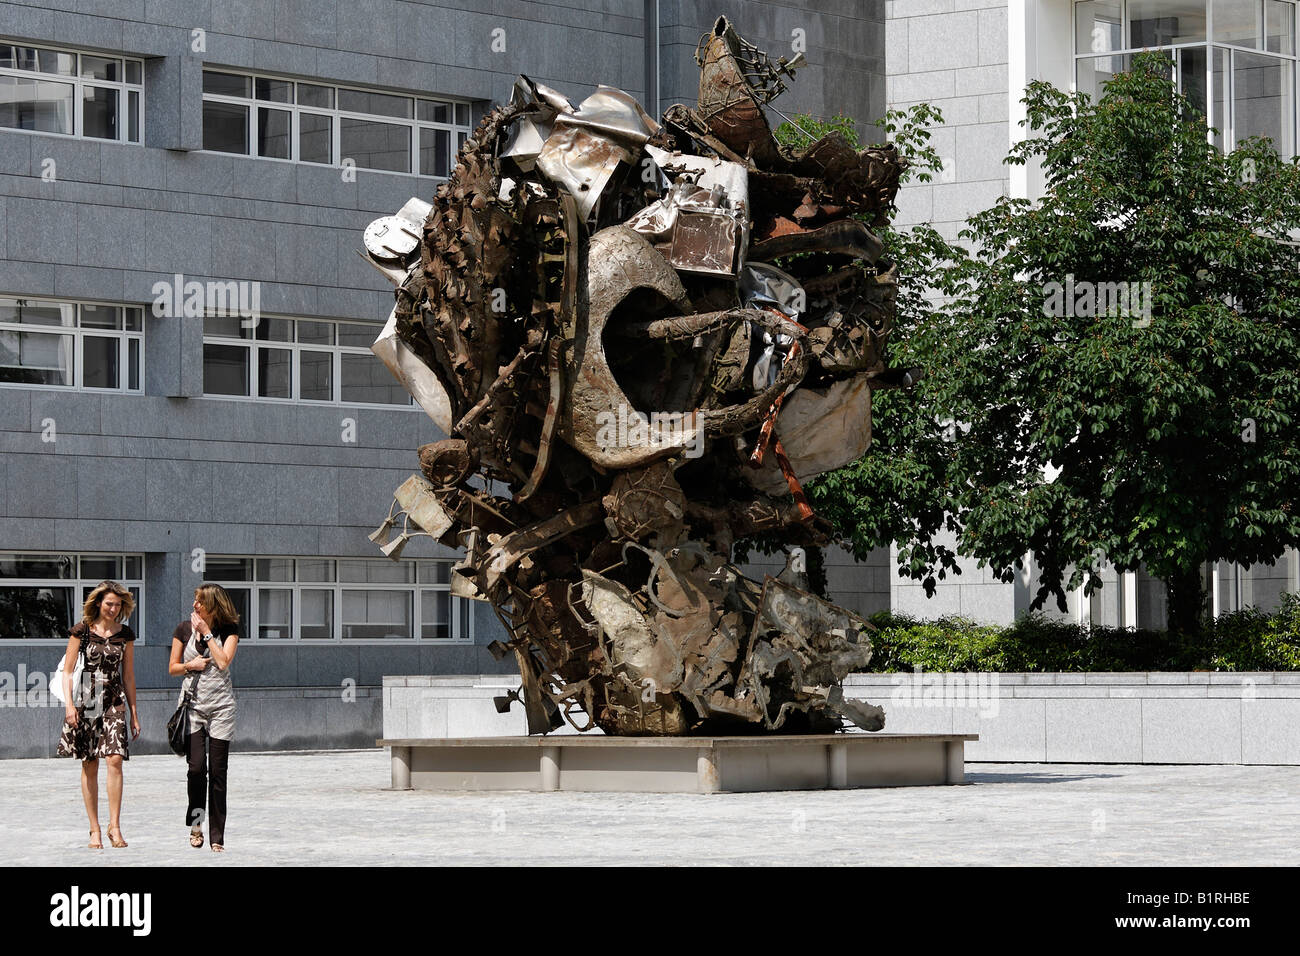 La sculpture à partir de ferraille par Richard Serra, Sarreguemines, du quartier financier, du plateau de Kirchberg, Luxembourg, Europe Banque D'Images